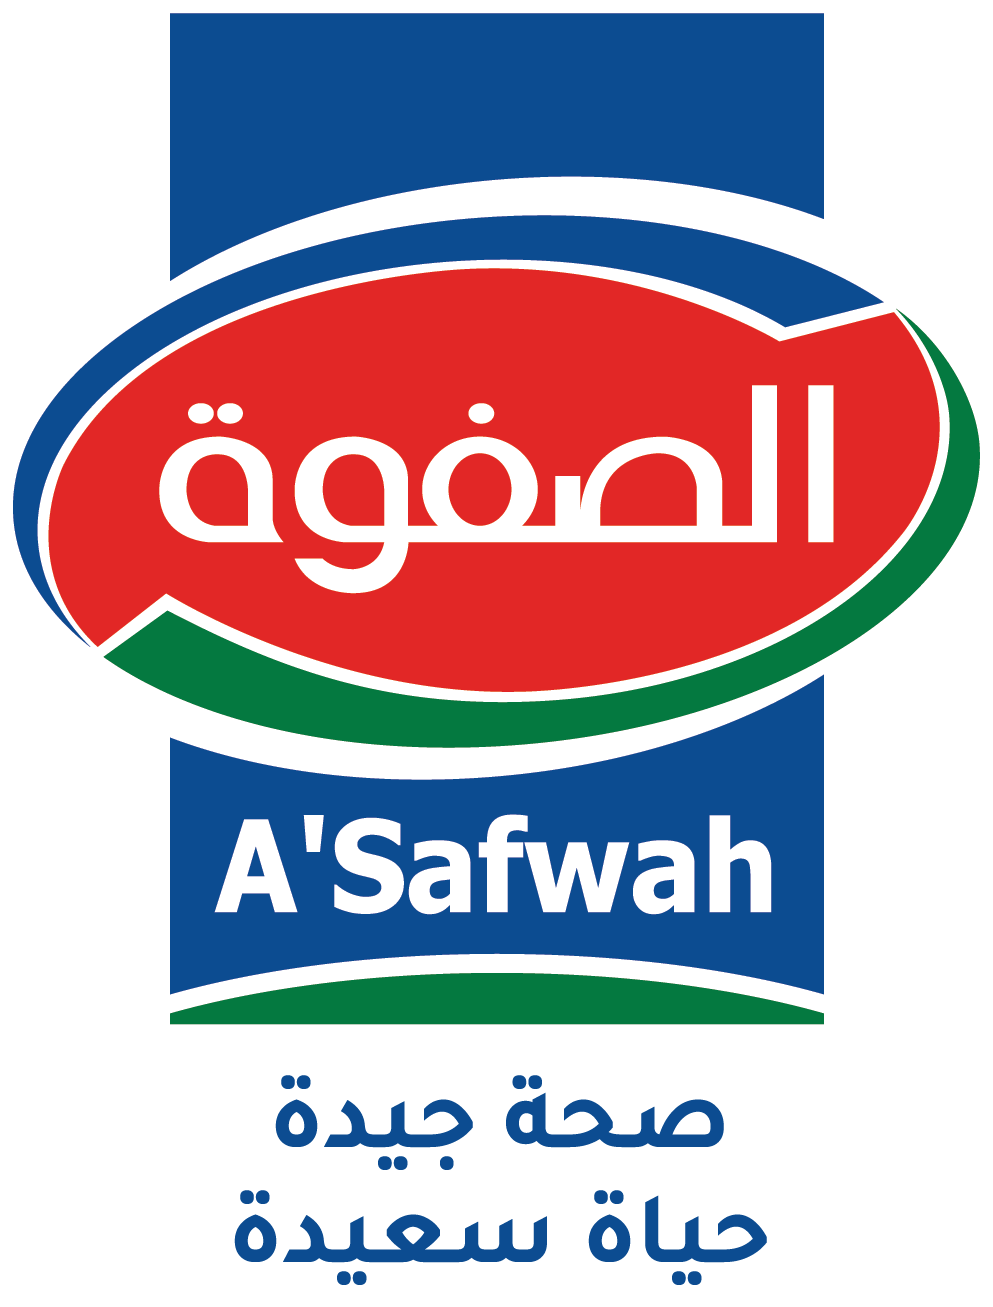 As Safawah